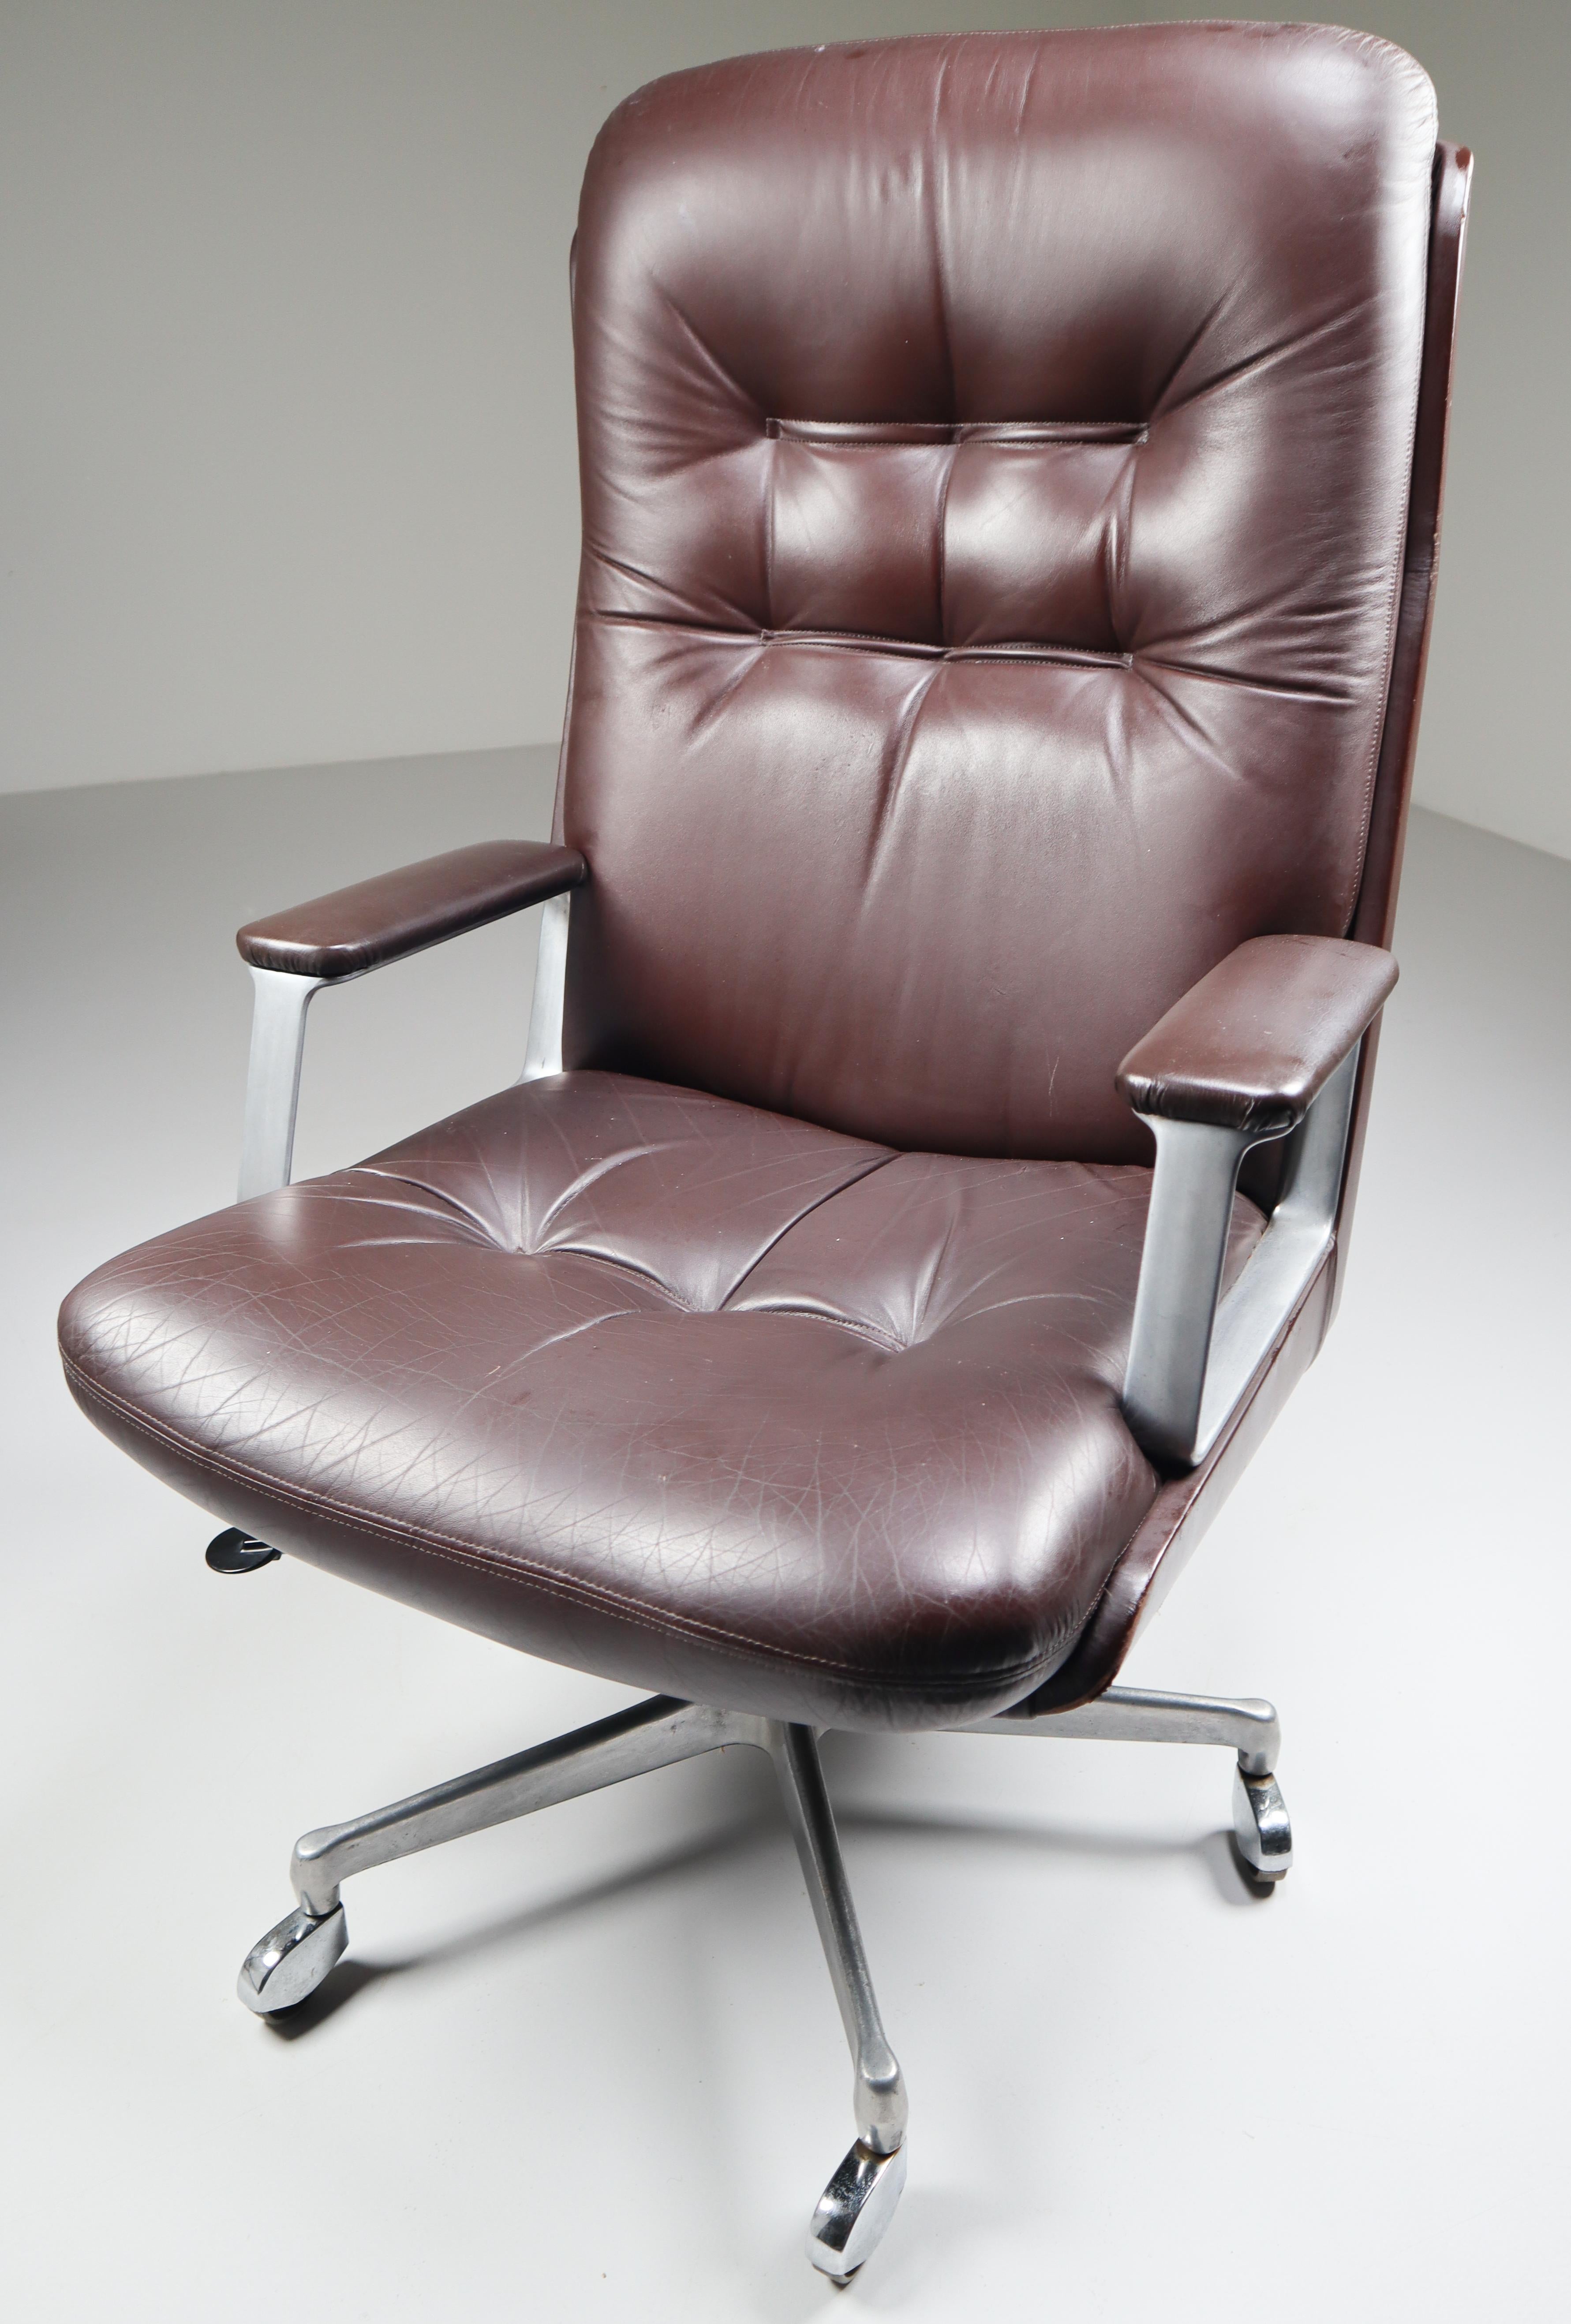 Aluminum Executive Office High Back Chair by Osvaldo Borsani for Tecno, Italy, 1972